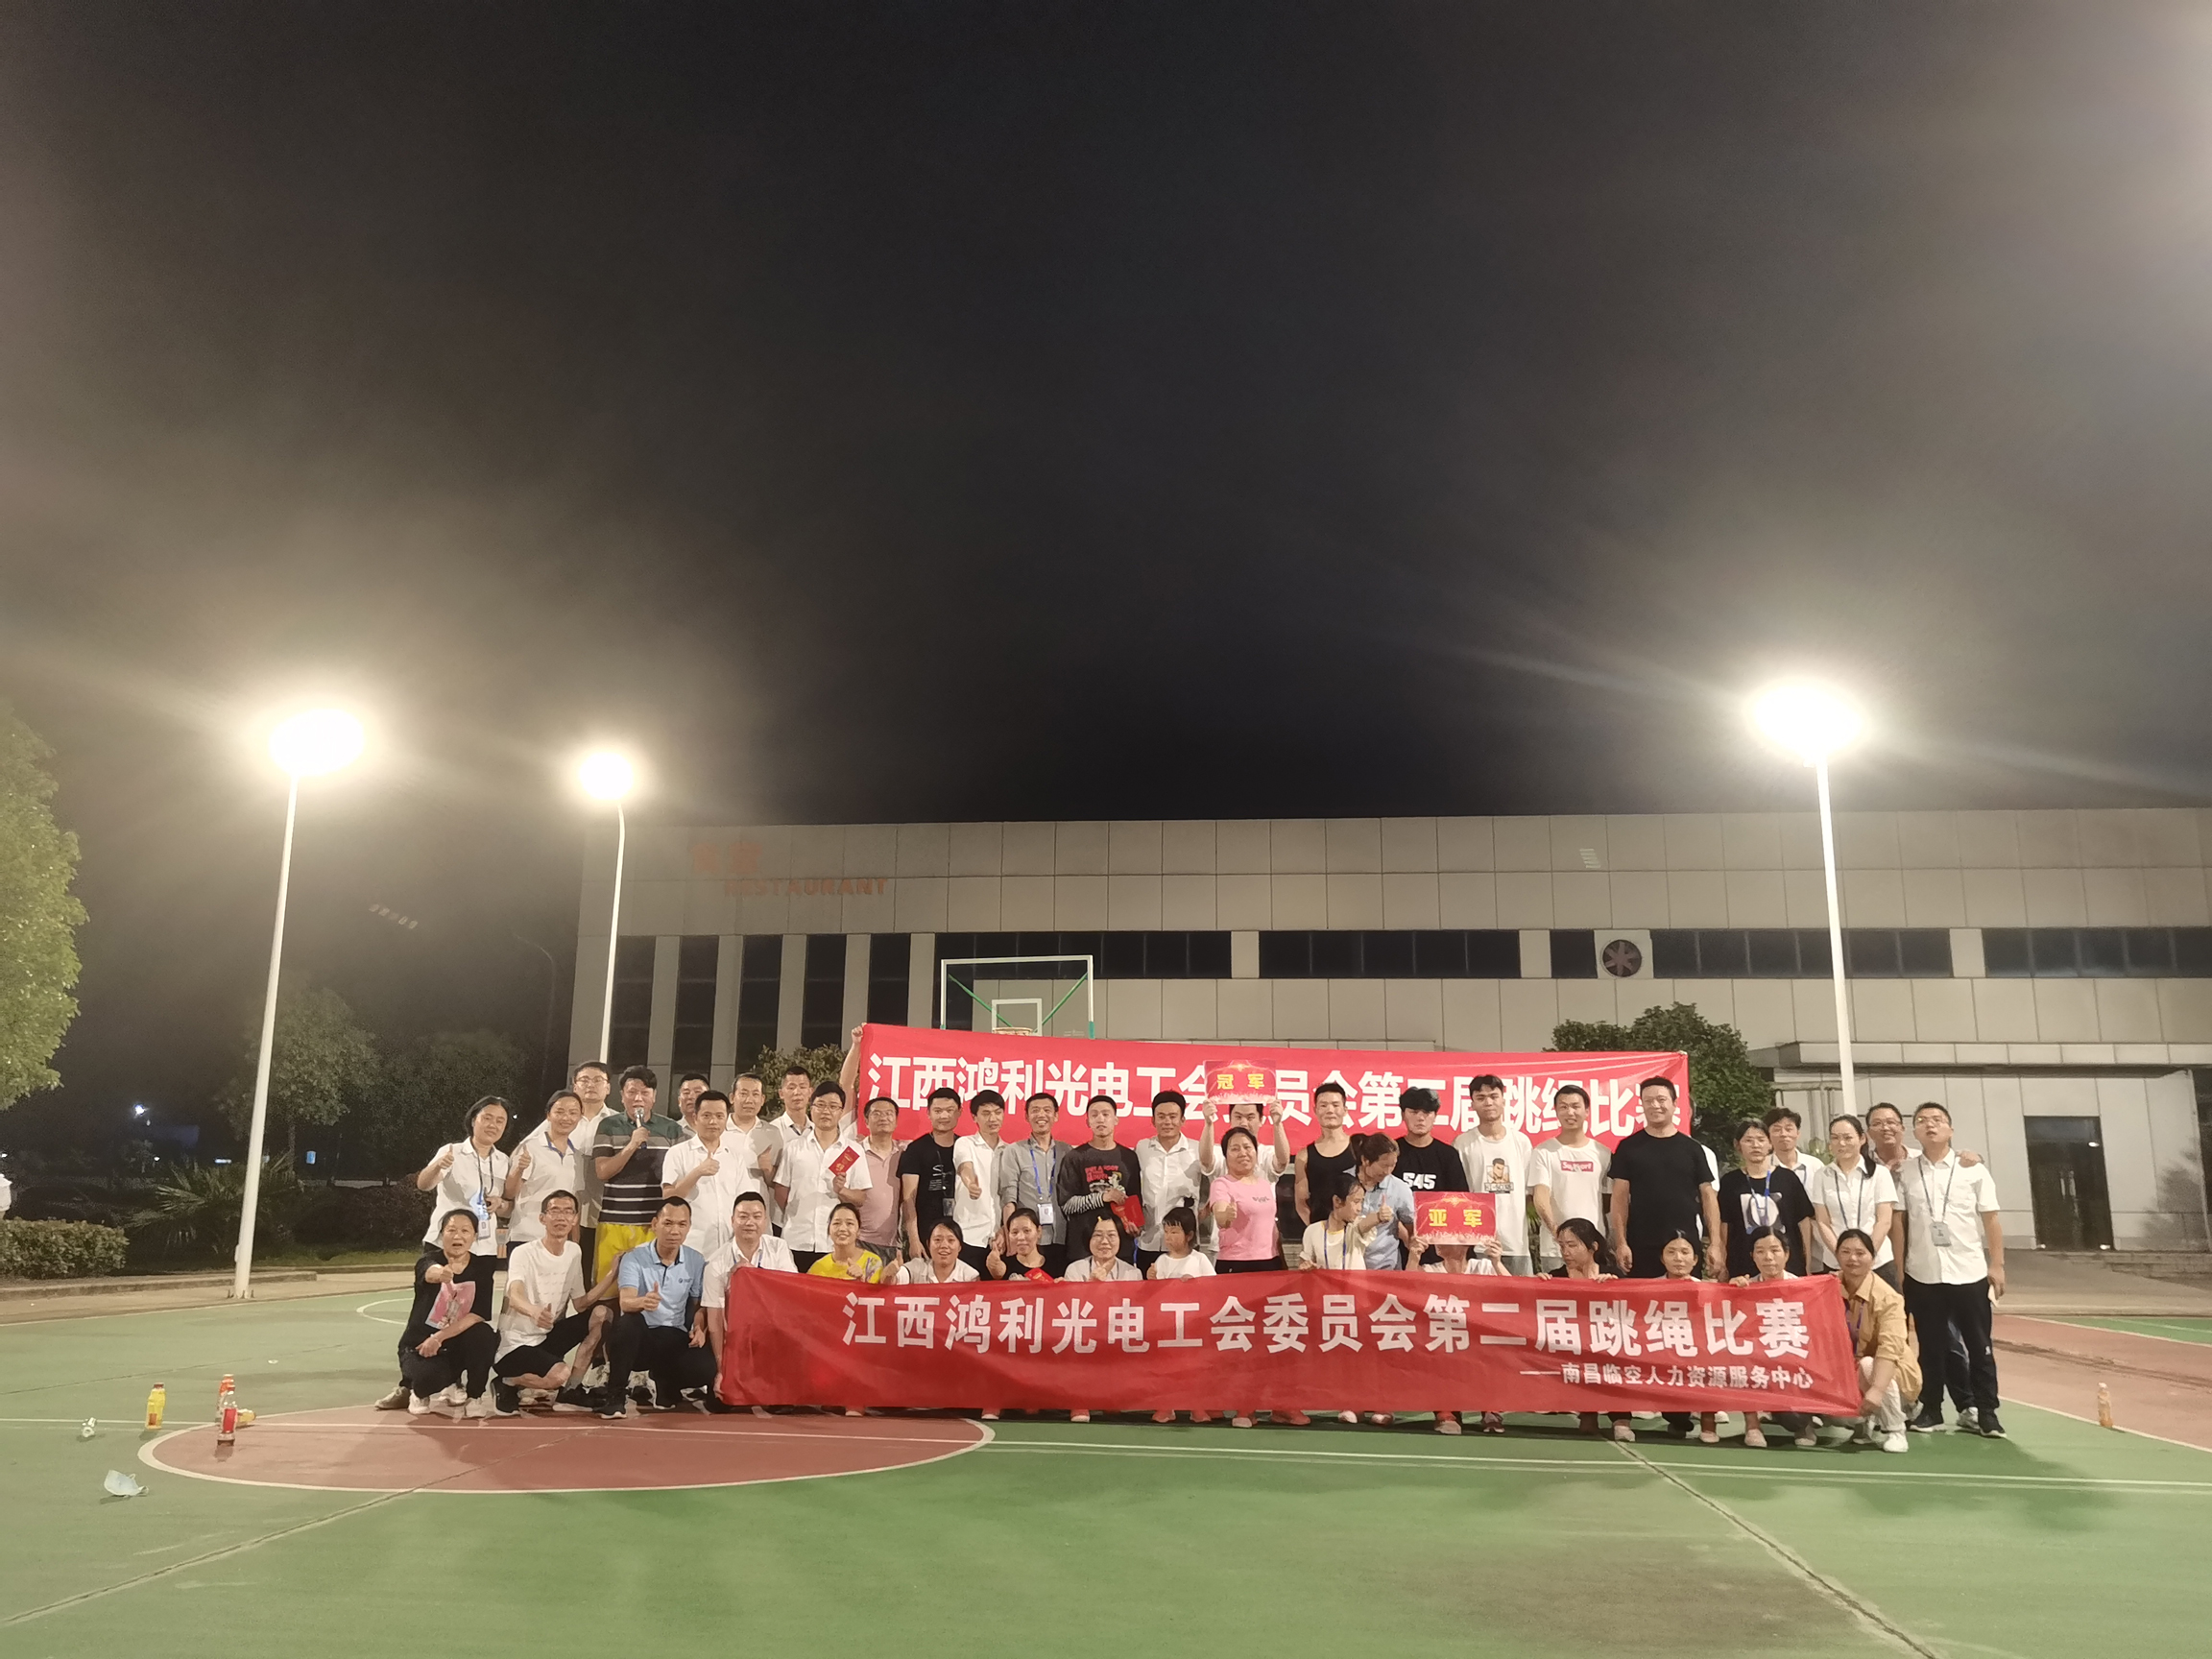 持续打造品质向上文化——江西鸿利举办第二届跳绳比赛